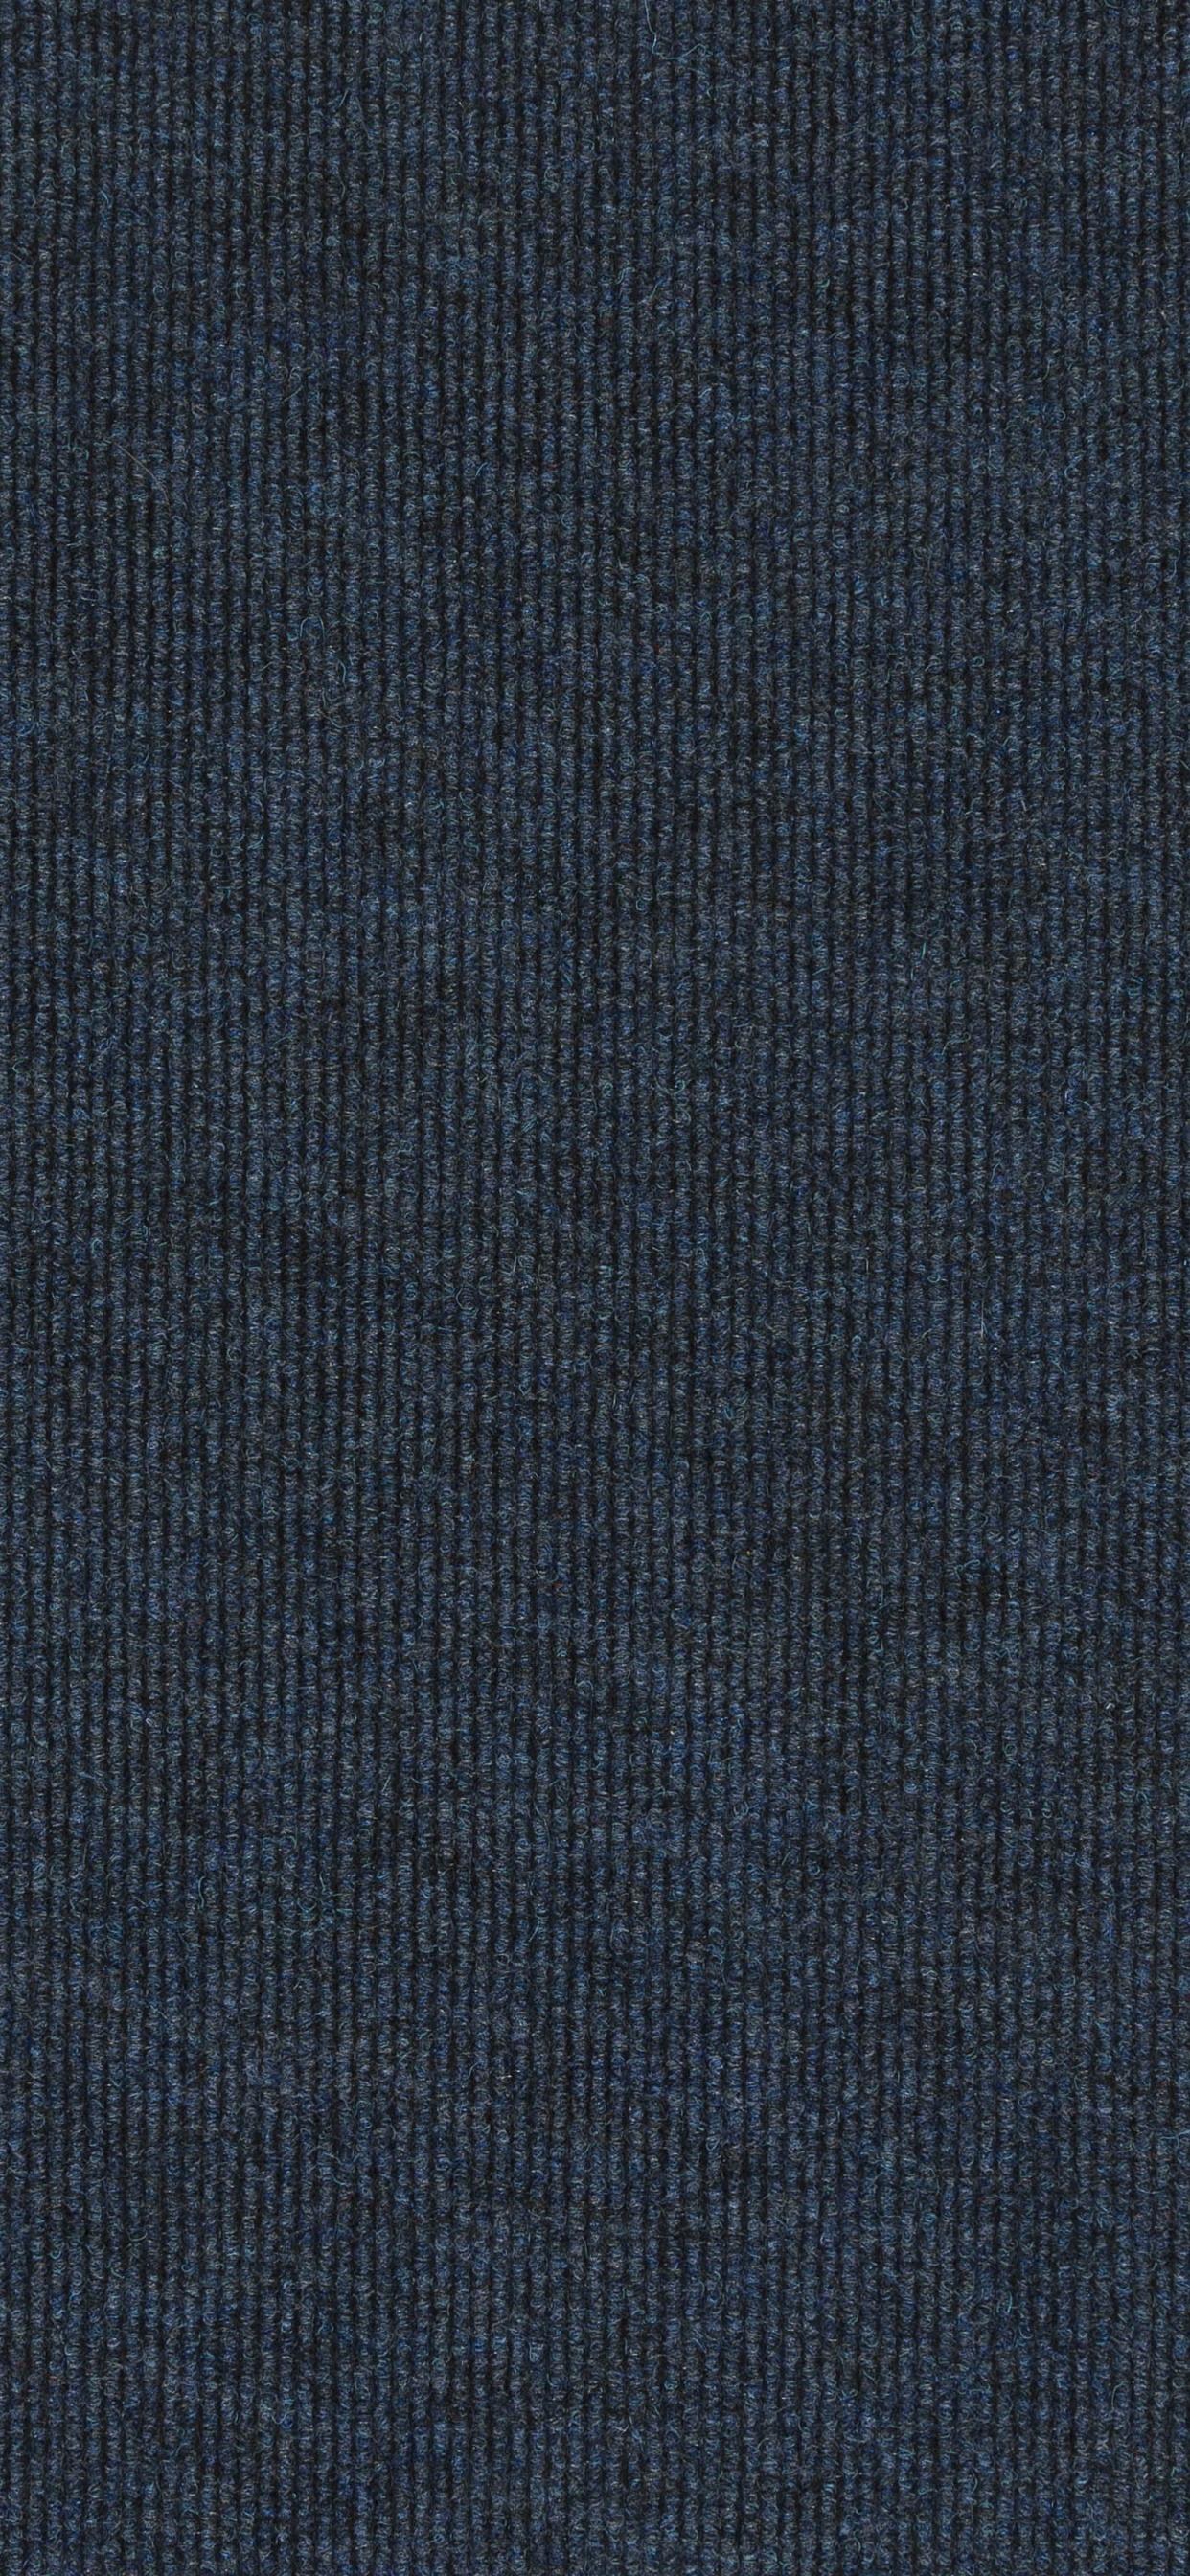 Textile Bleu Sur Fond Noir. Wallpaper in 1242x2688 Resolution